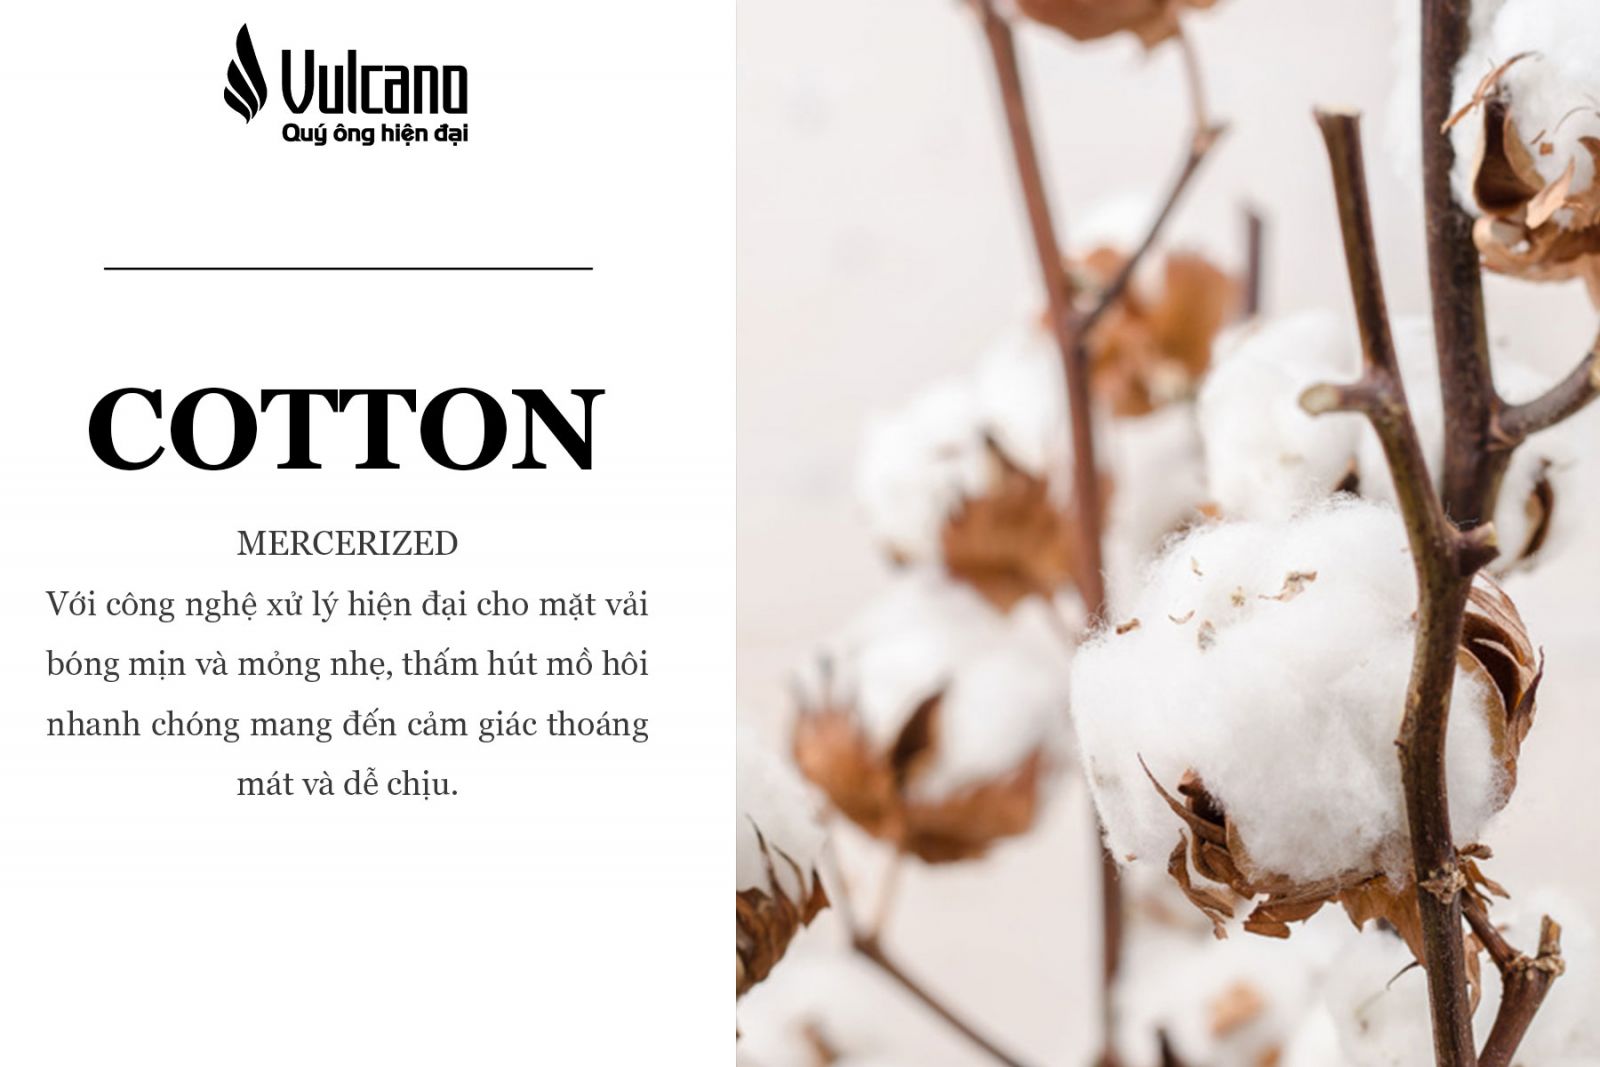 cotton-mercerized-chat-lieu-vulcano.jpg